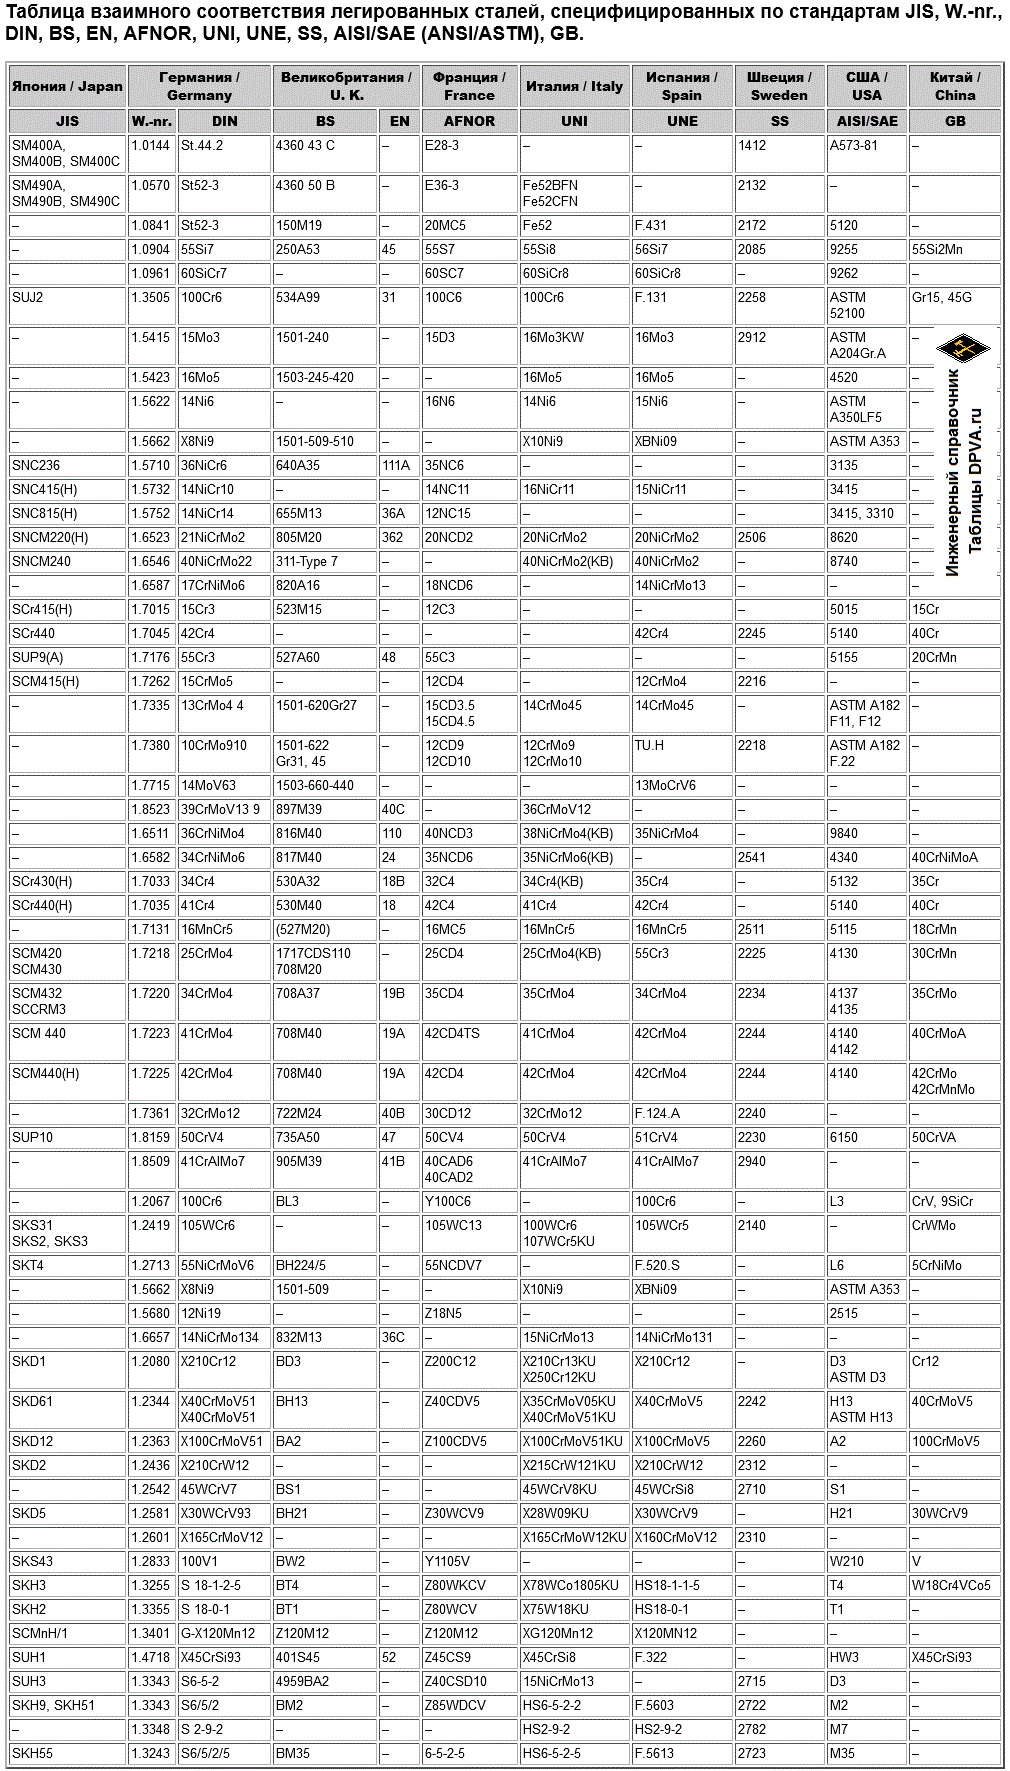 Таблица взаимного соответствия легированных сталей, специфицированных по стандартам JIS, W.-nr., DIN, BS, EN, AFNOR, UNI, UNE, SS, AISI/SAE (ANSI/ASTM), GB